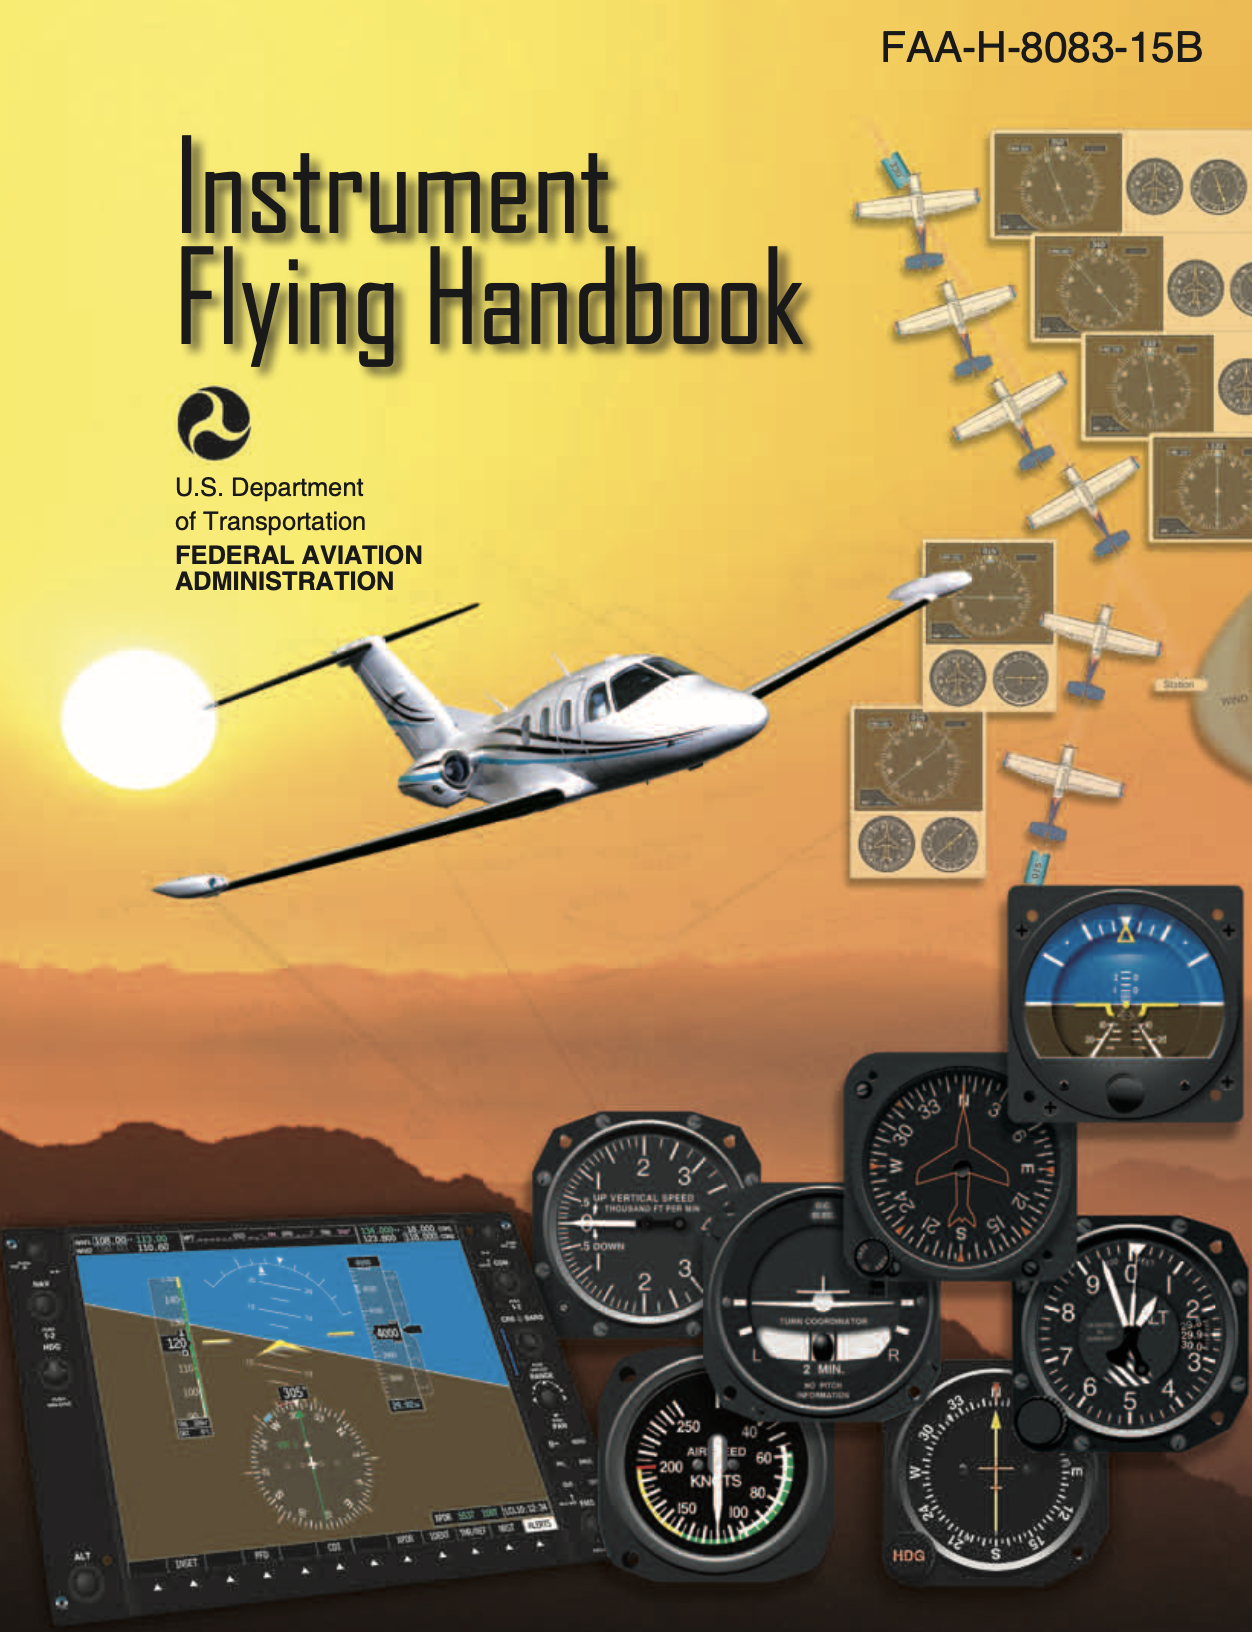 Instrument Flying Handbook [FAA-H-8083-15B]